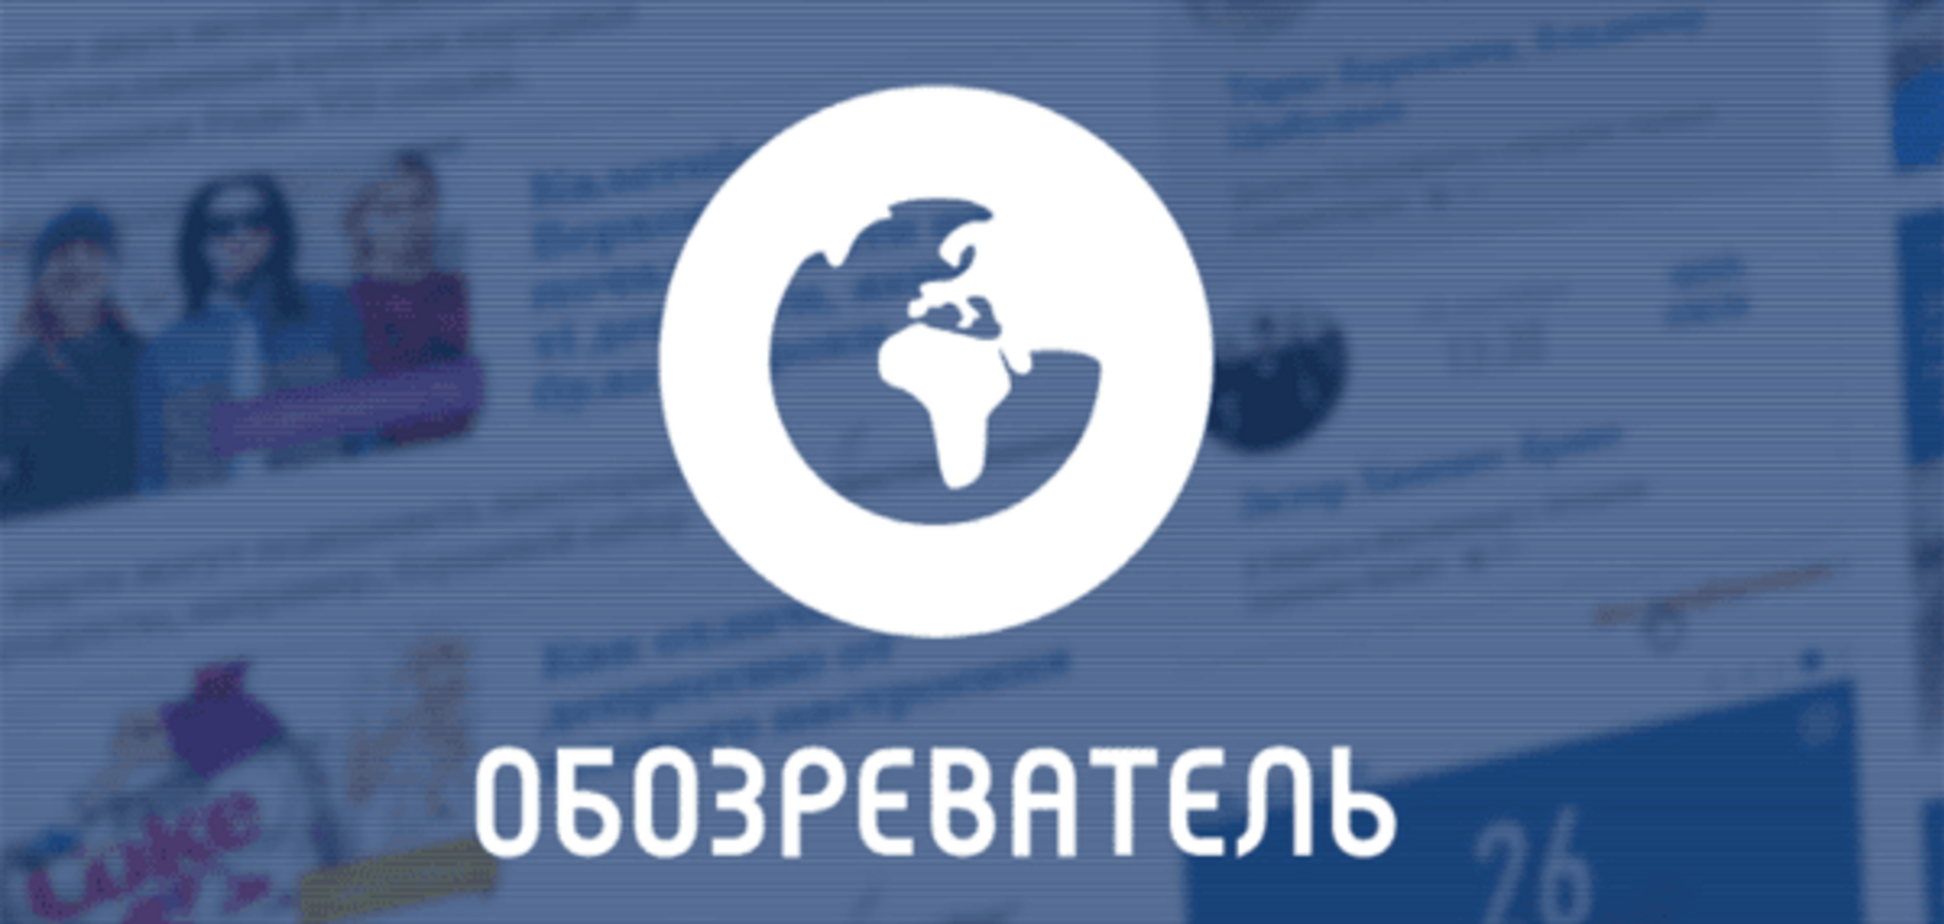 'Обозреватель' попал в топ самых популярных сайтов, которыми пользуются украинцы: инфографика